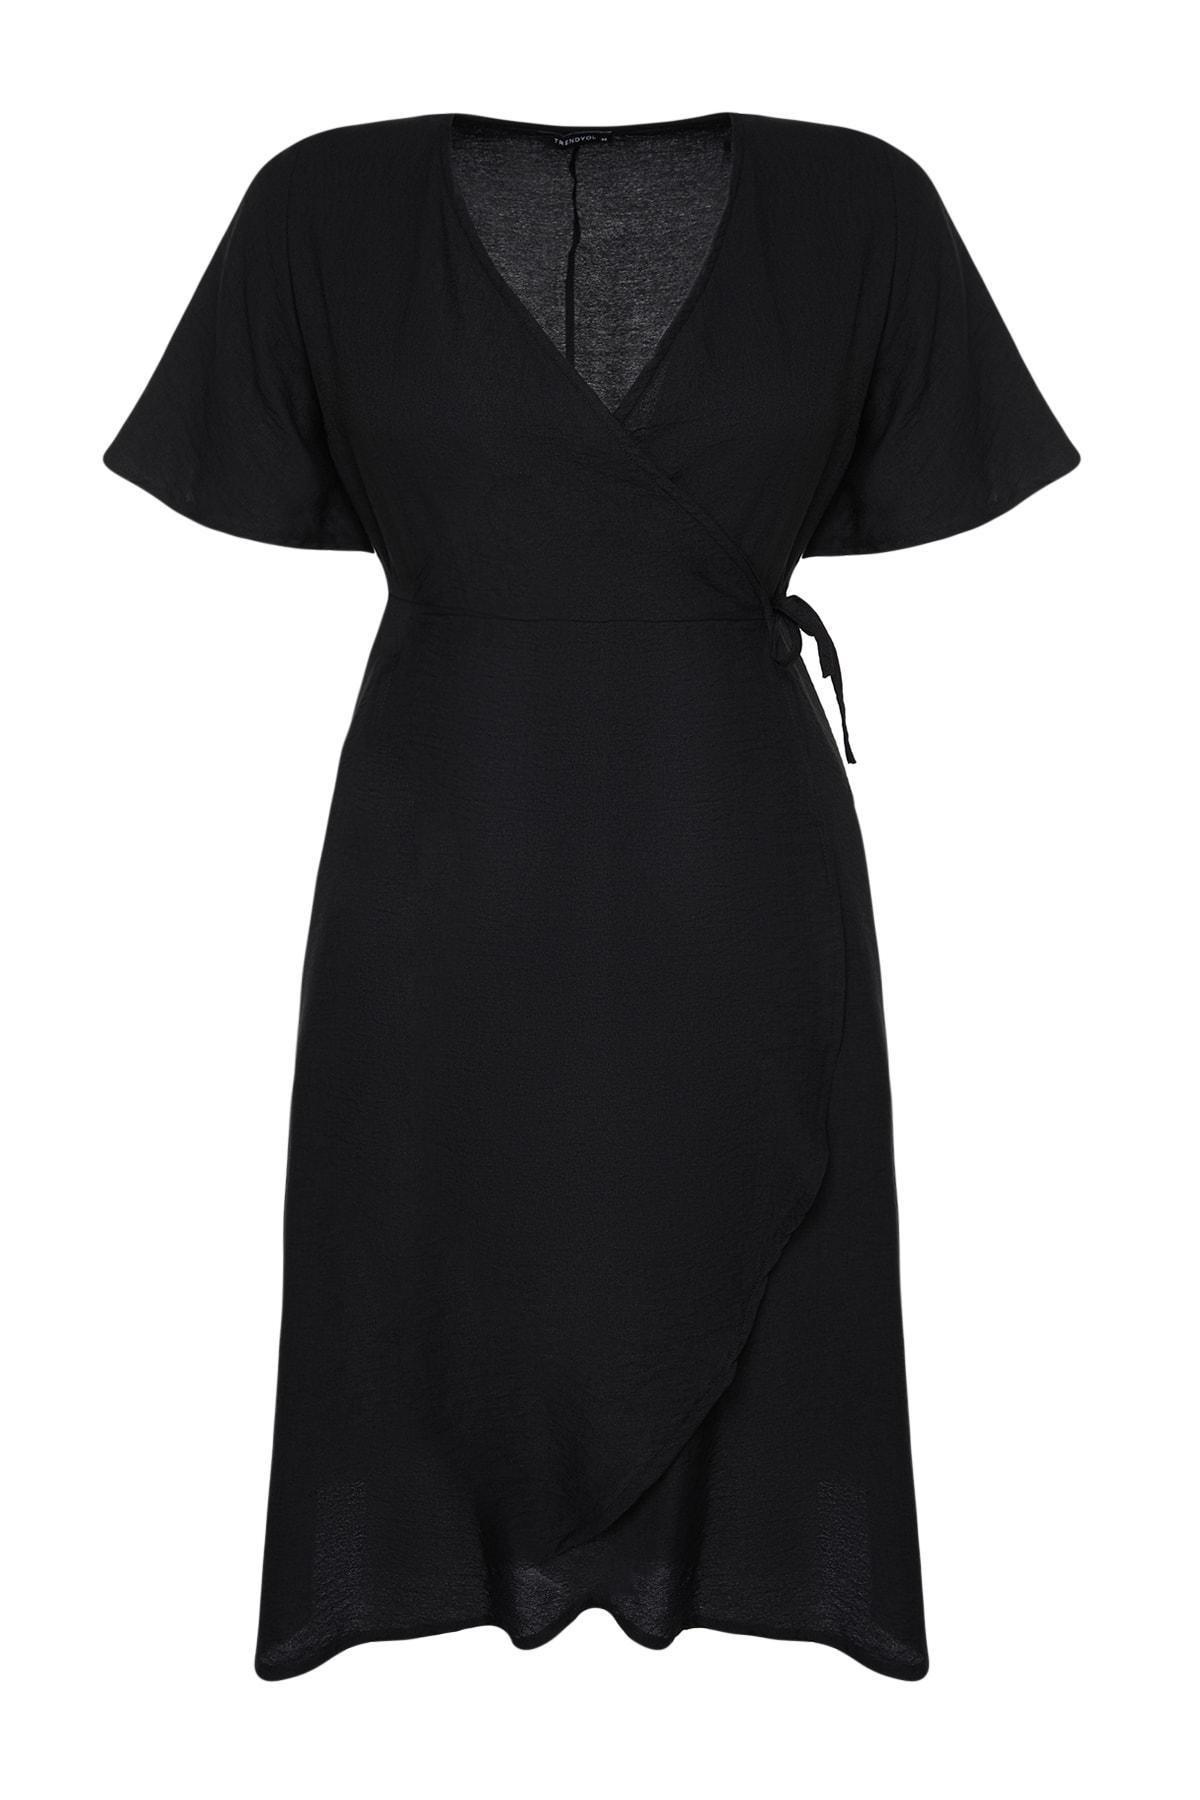 Trendyol - Black Wrapover V Neck Plus Size Dress